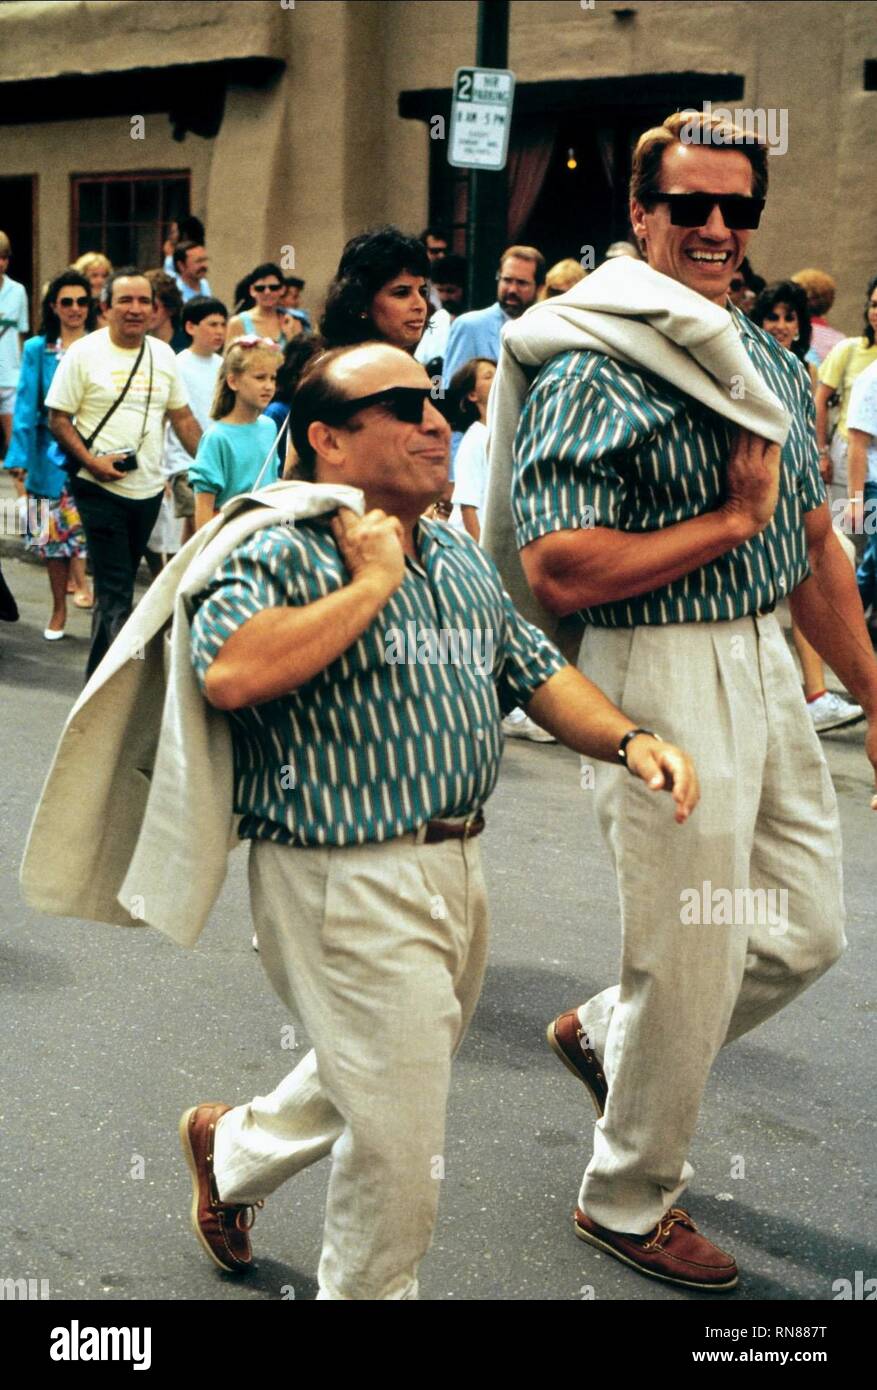 DEVITO, Schwarzenegger, jumeaux, 1988 Banque D'Images